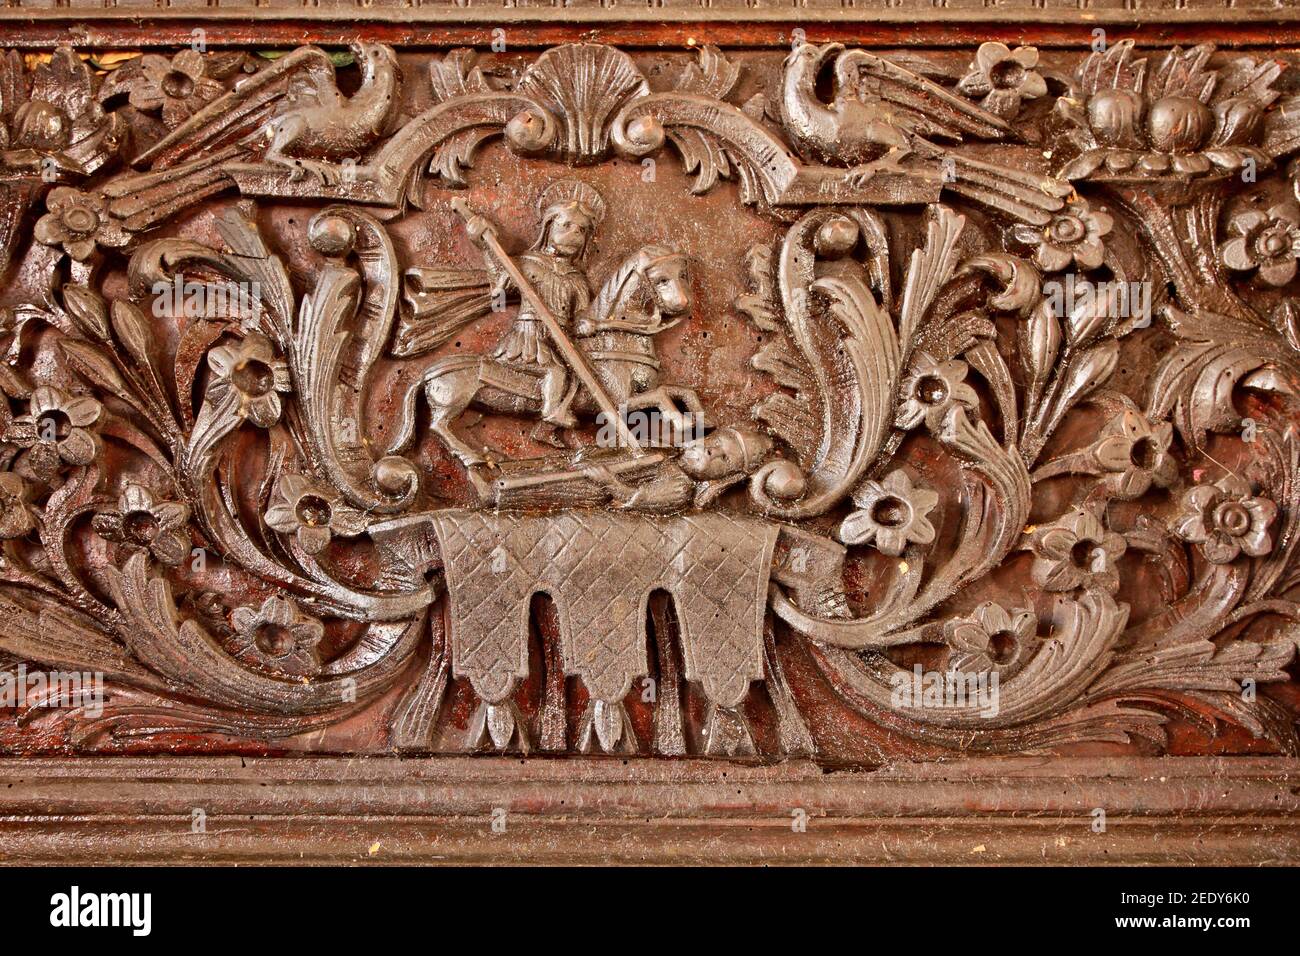 Dettaglio da un'iconostasi in legno che raffigura San Demetra (Agios Dimitrios) a cavallo e combattendo un demone, in una Chiesa greco-ortodossa. Foto Stock